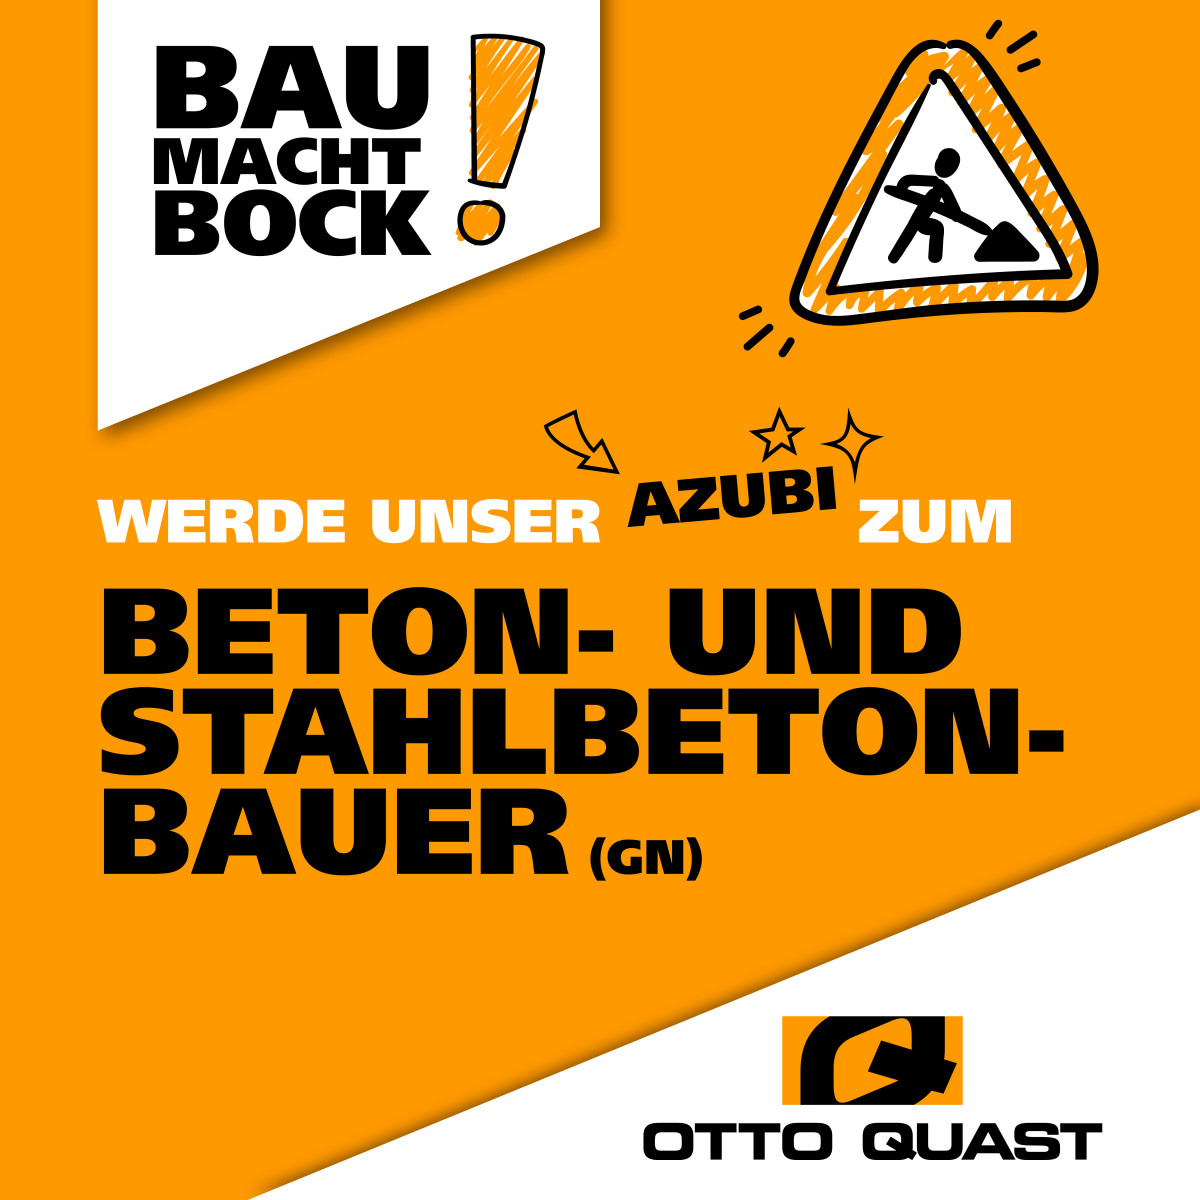 🚧 BAU MACHT BOCK 💯 Beton- und Stahlbetonbauer bei OTTO QUAST 👷👷‍♀️